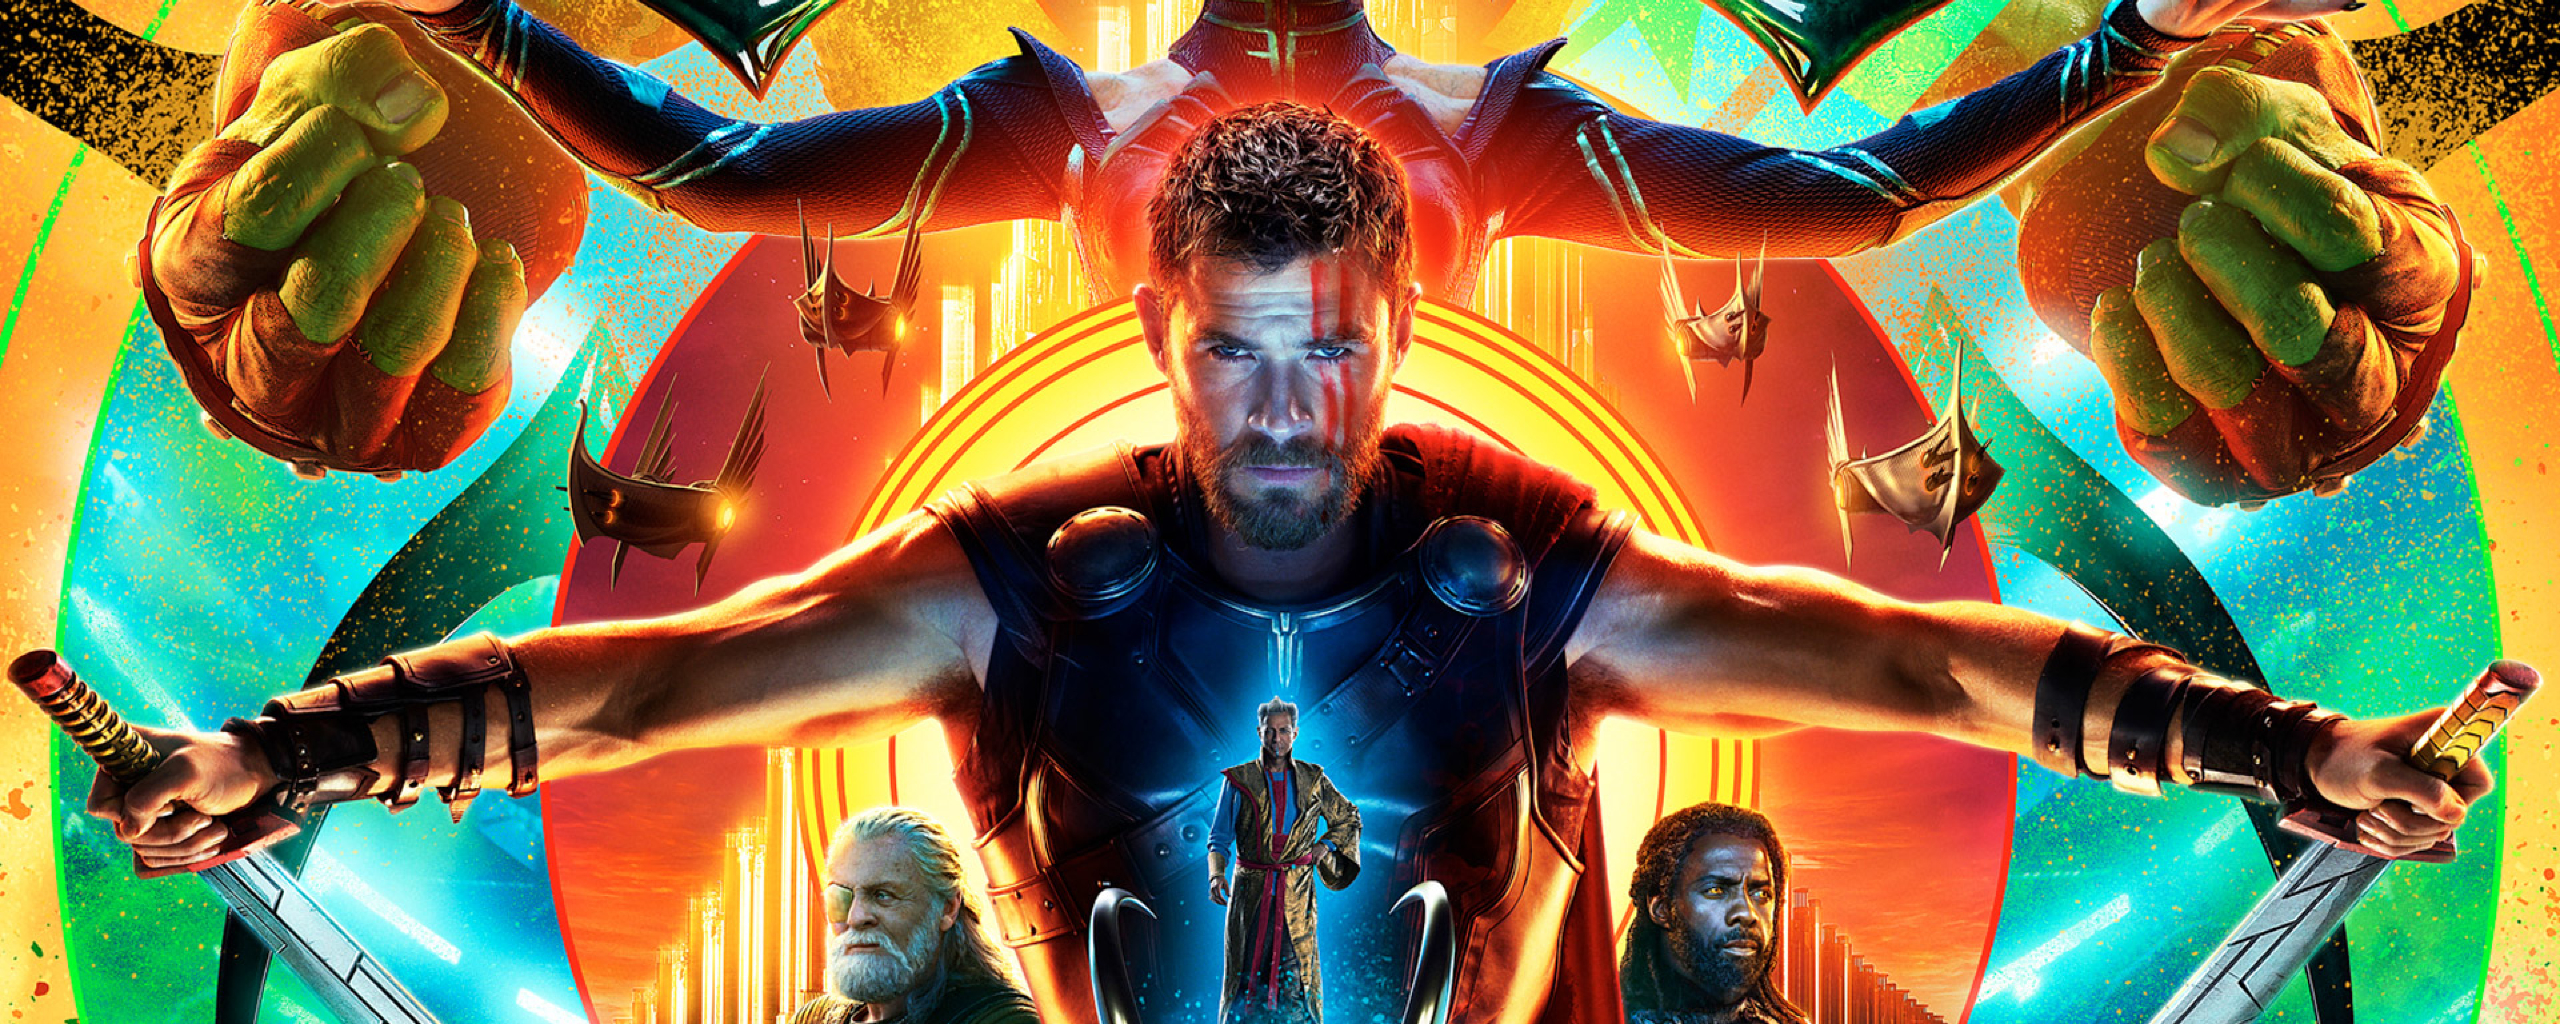 Hulk Hela Thor In Ragnarok Poster Full HD Wallpaper